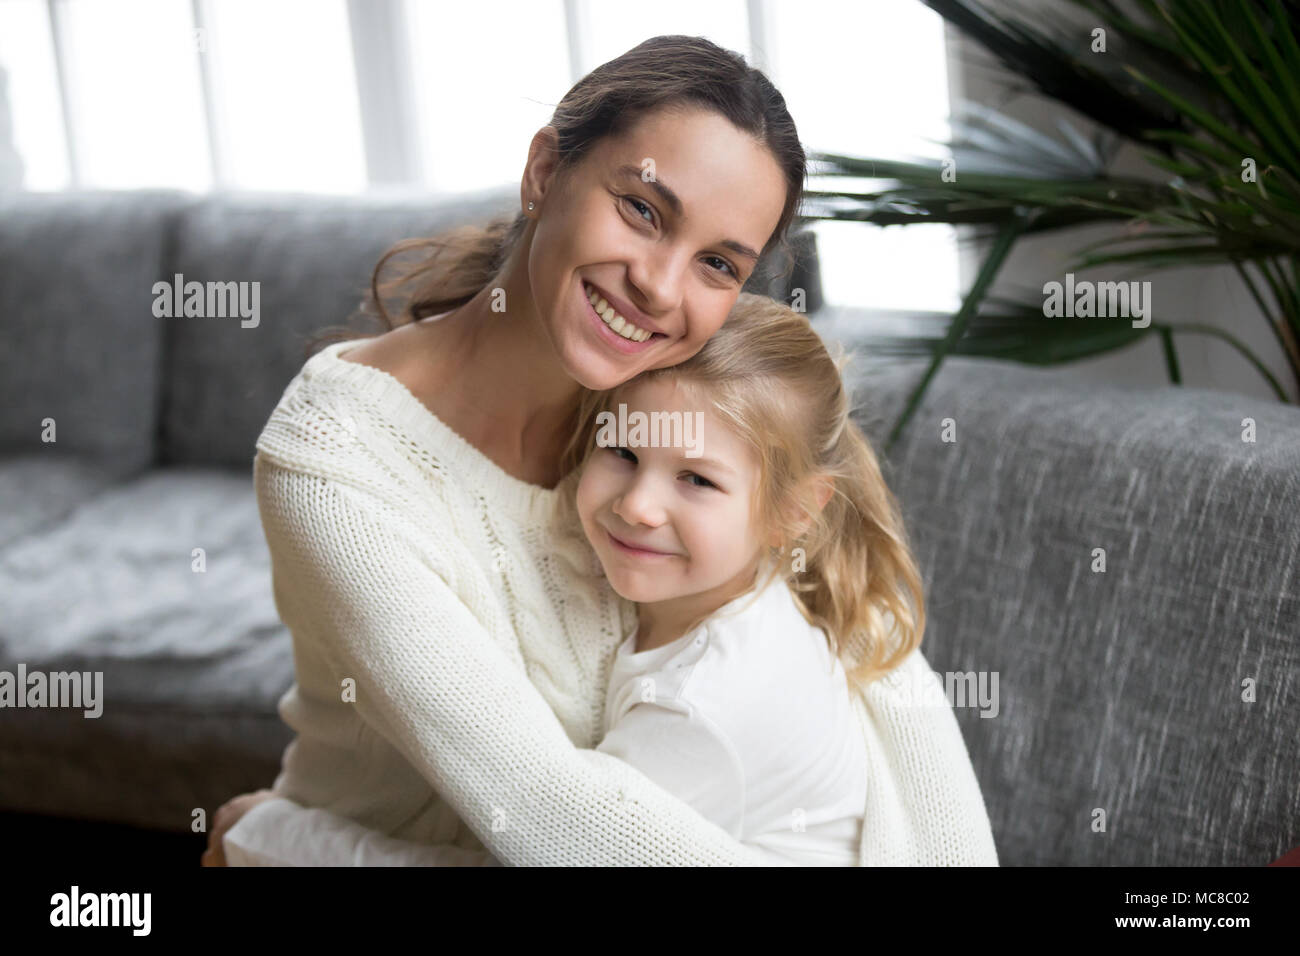 Portrait von glücklich liebende Mutter umarmt süsse kleine Tochter, lächelnden jungen Frau umarmt Vorschule kind Mädchen, Mutter und Kind l Stockfoto